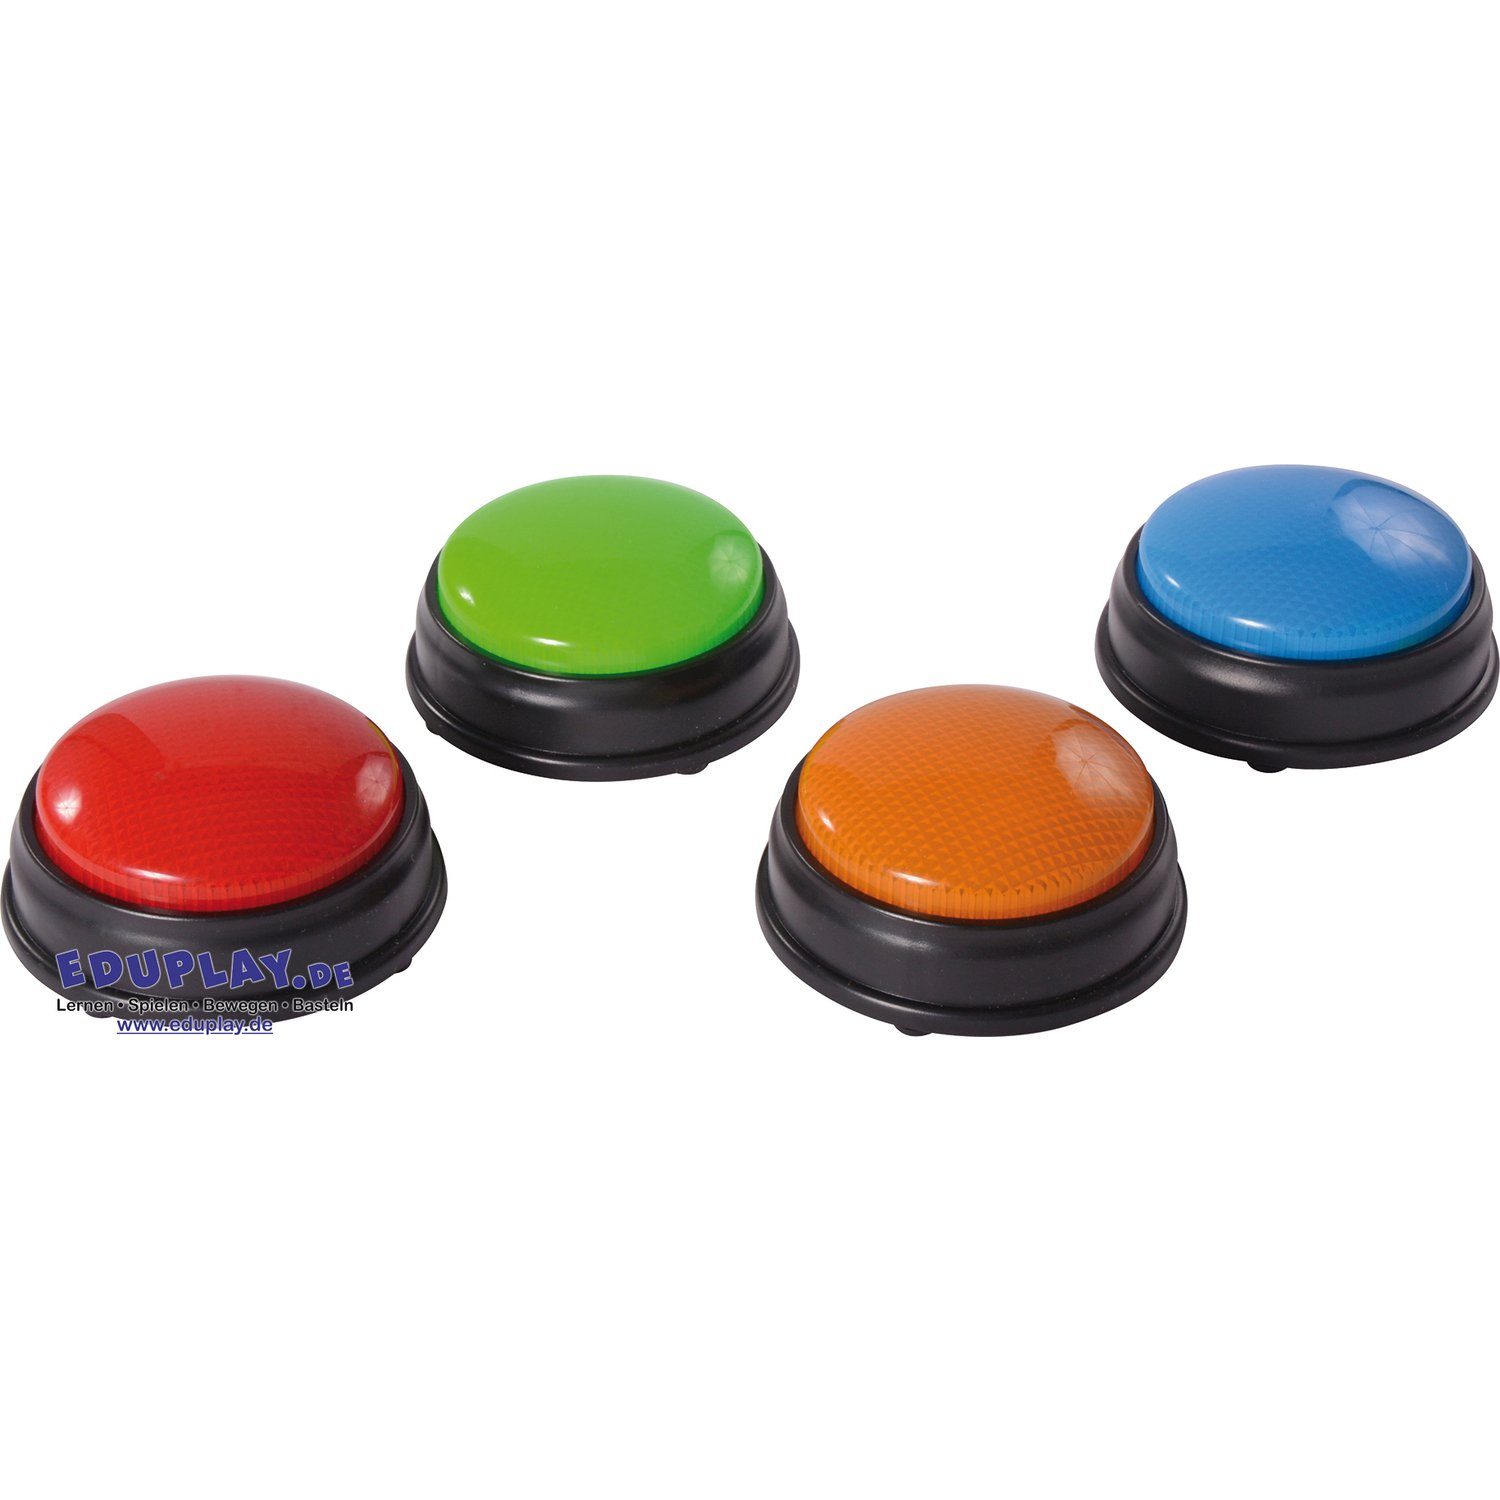 EDUPLAY Lernspielzeug Buzzer mit Blinklicht-Signal & Töne, 4-teilig (1 Set)